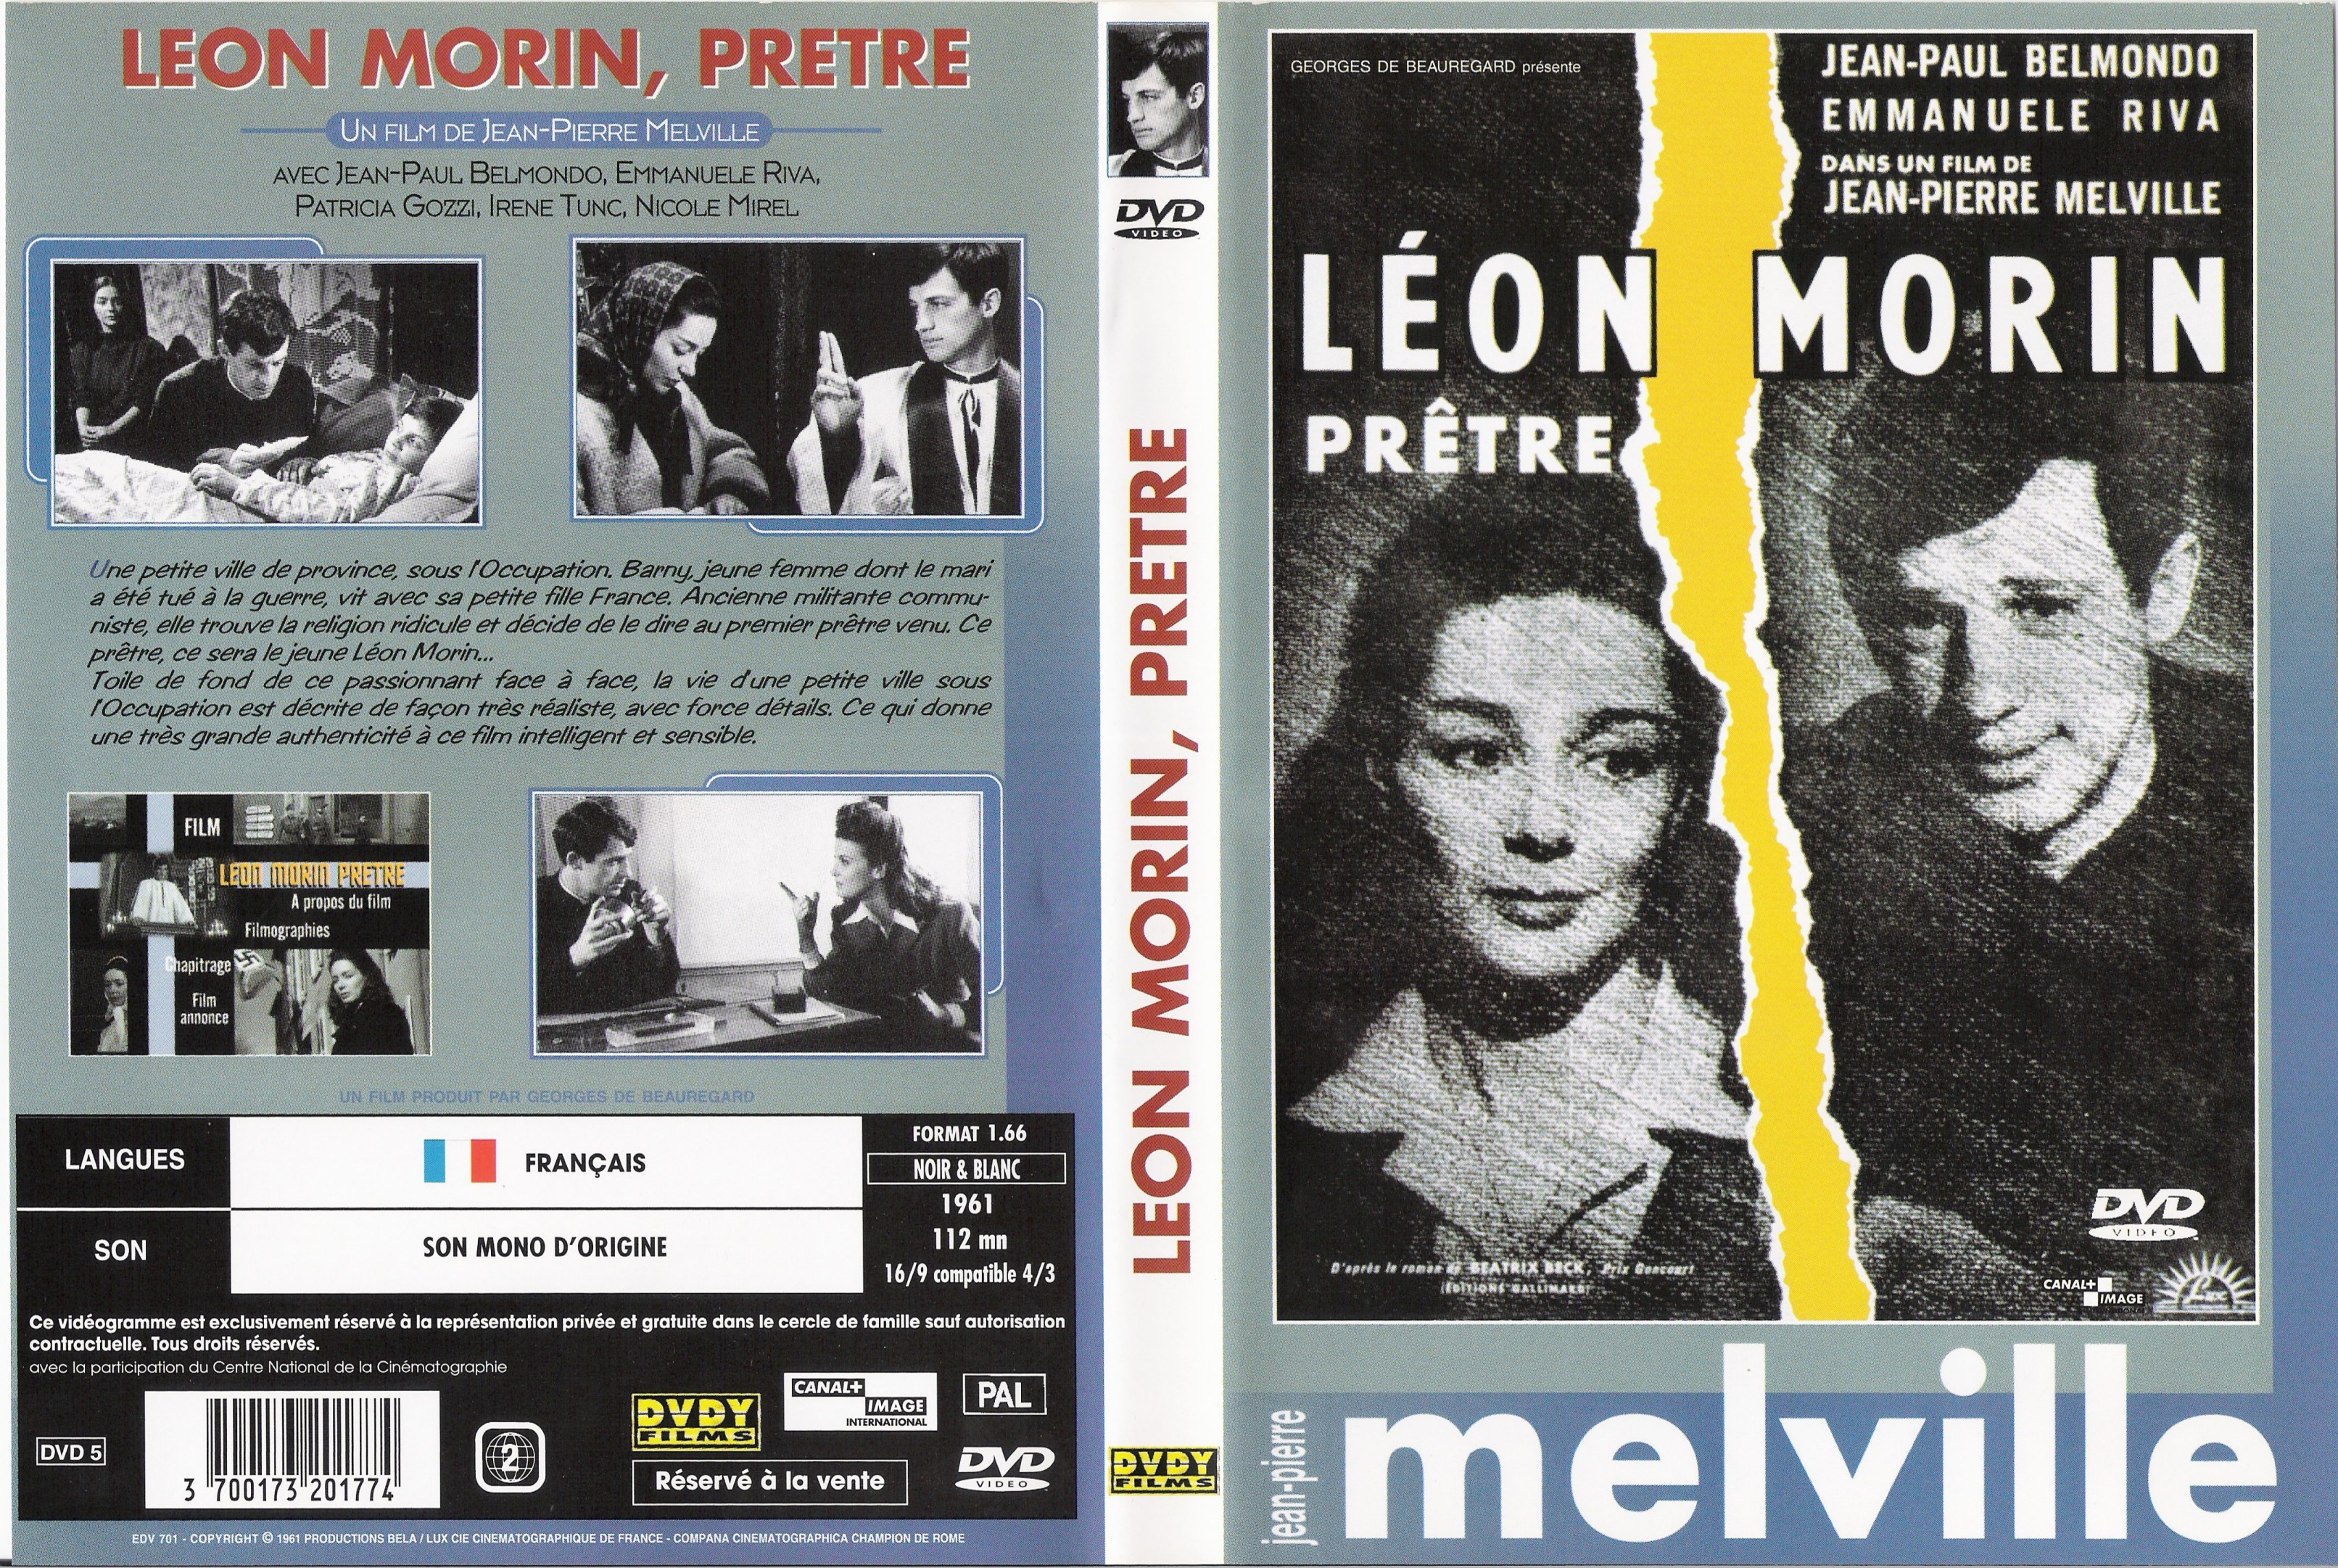 Jaquette DVD Leon Morin pretre